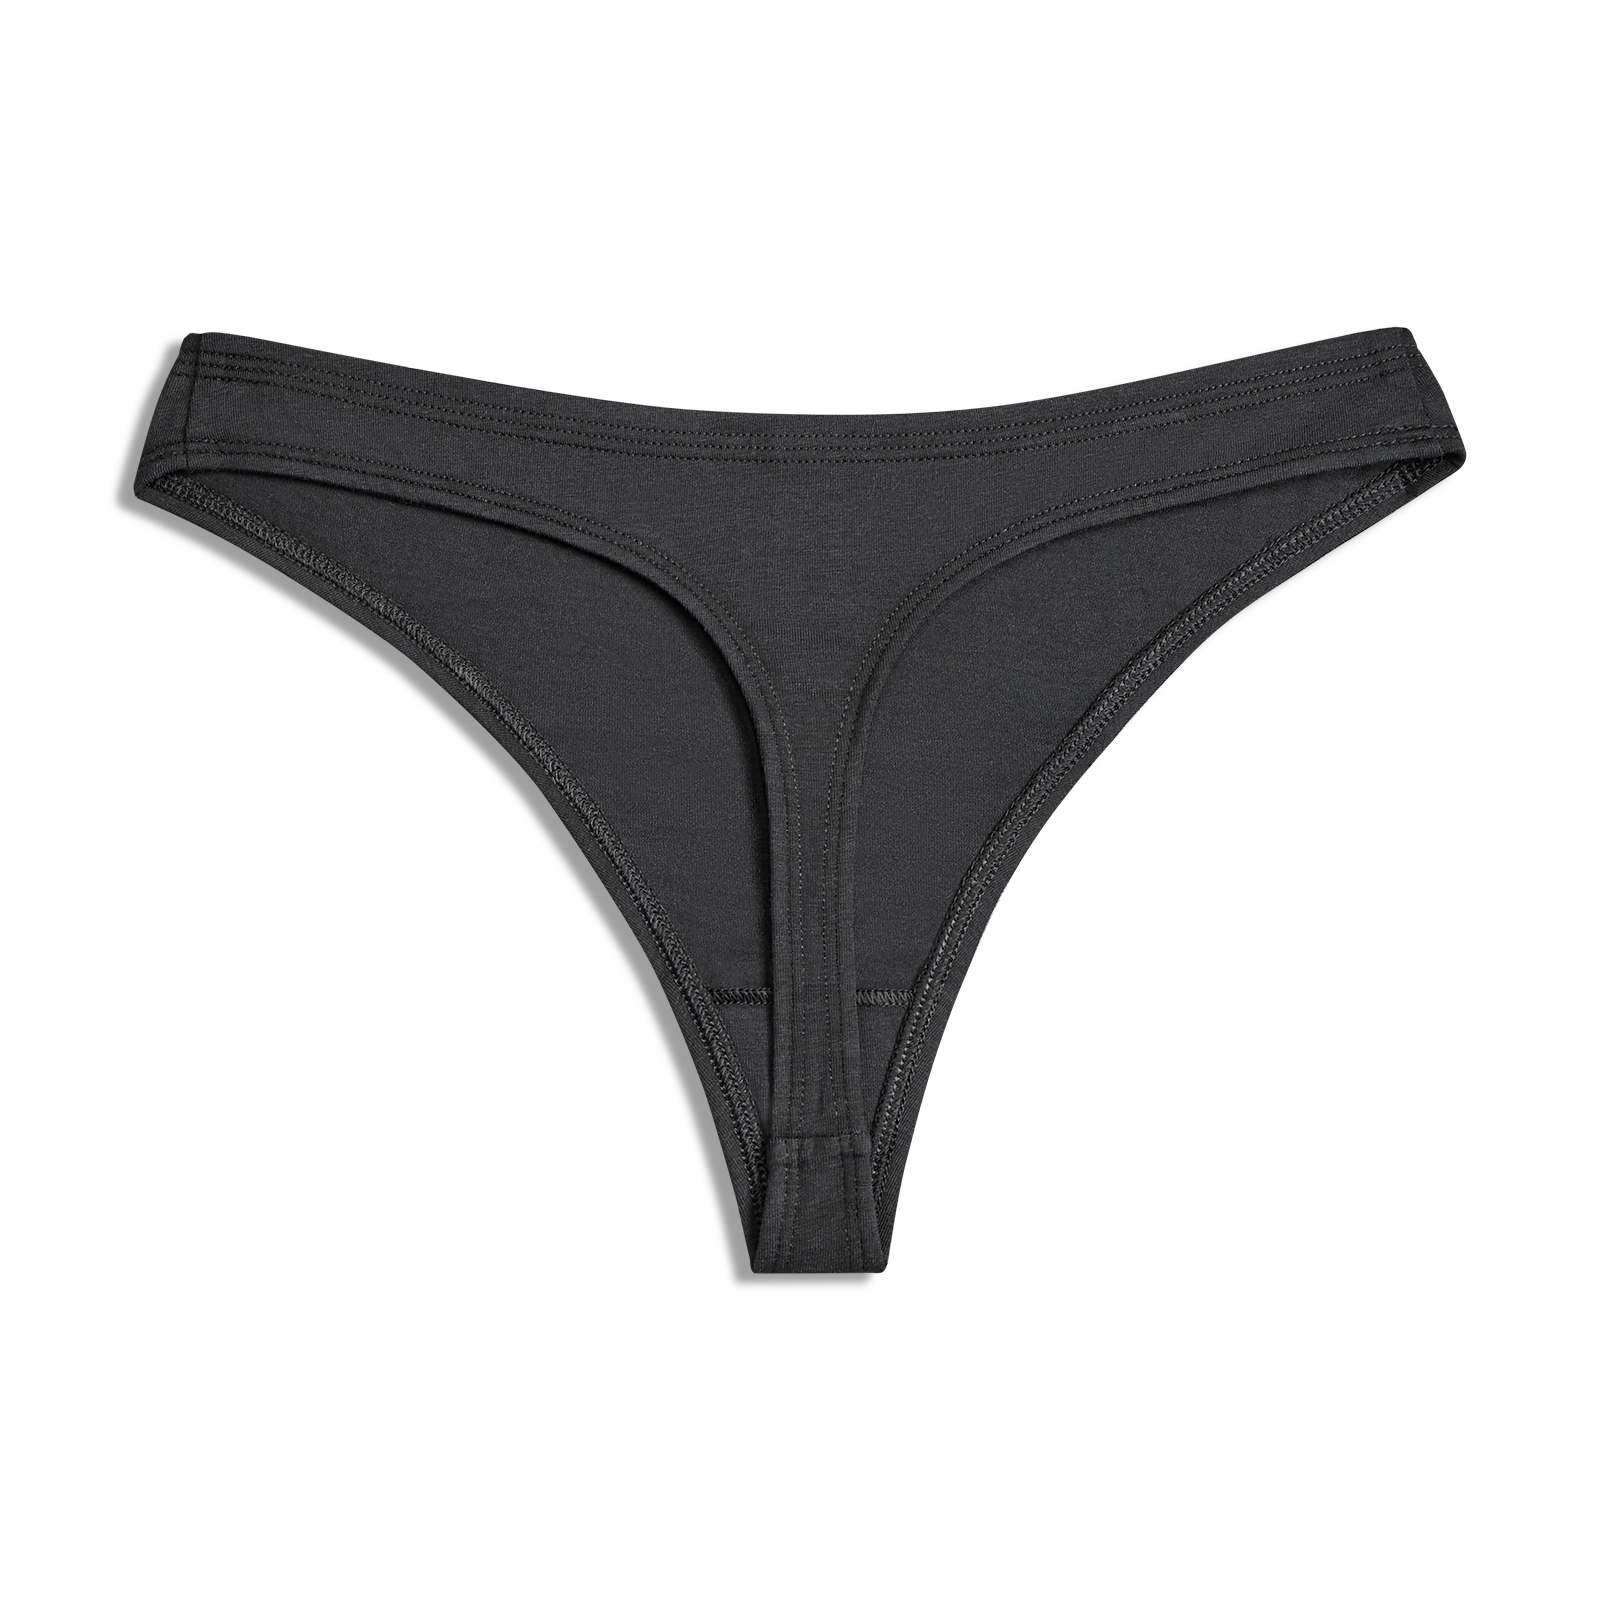 Buy the Best Men's Hip Briefs Underwear Online - 20% OFF on First Order